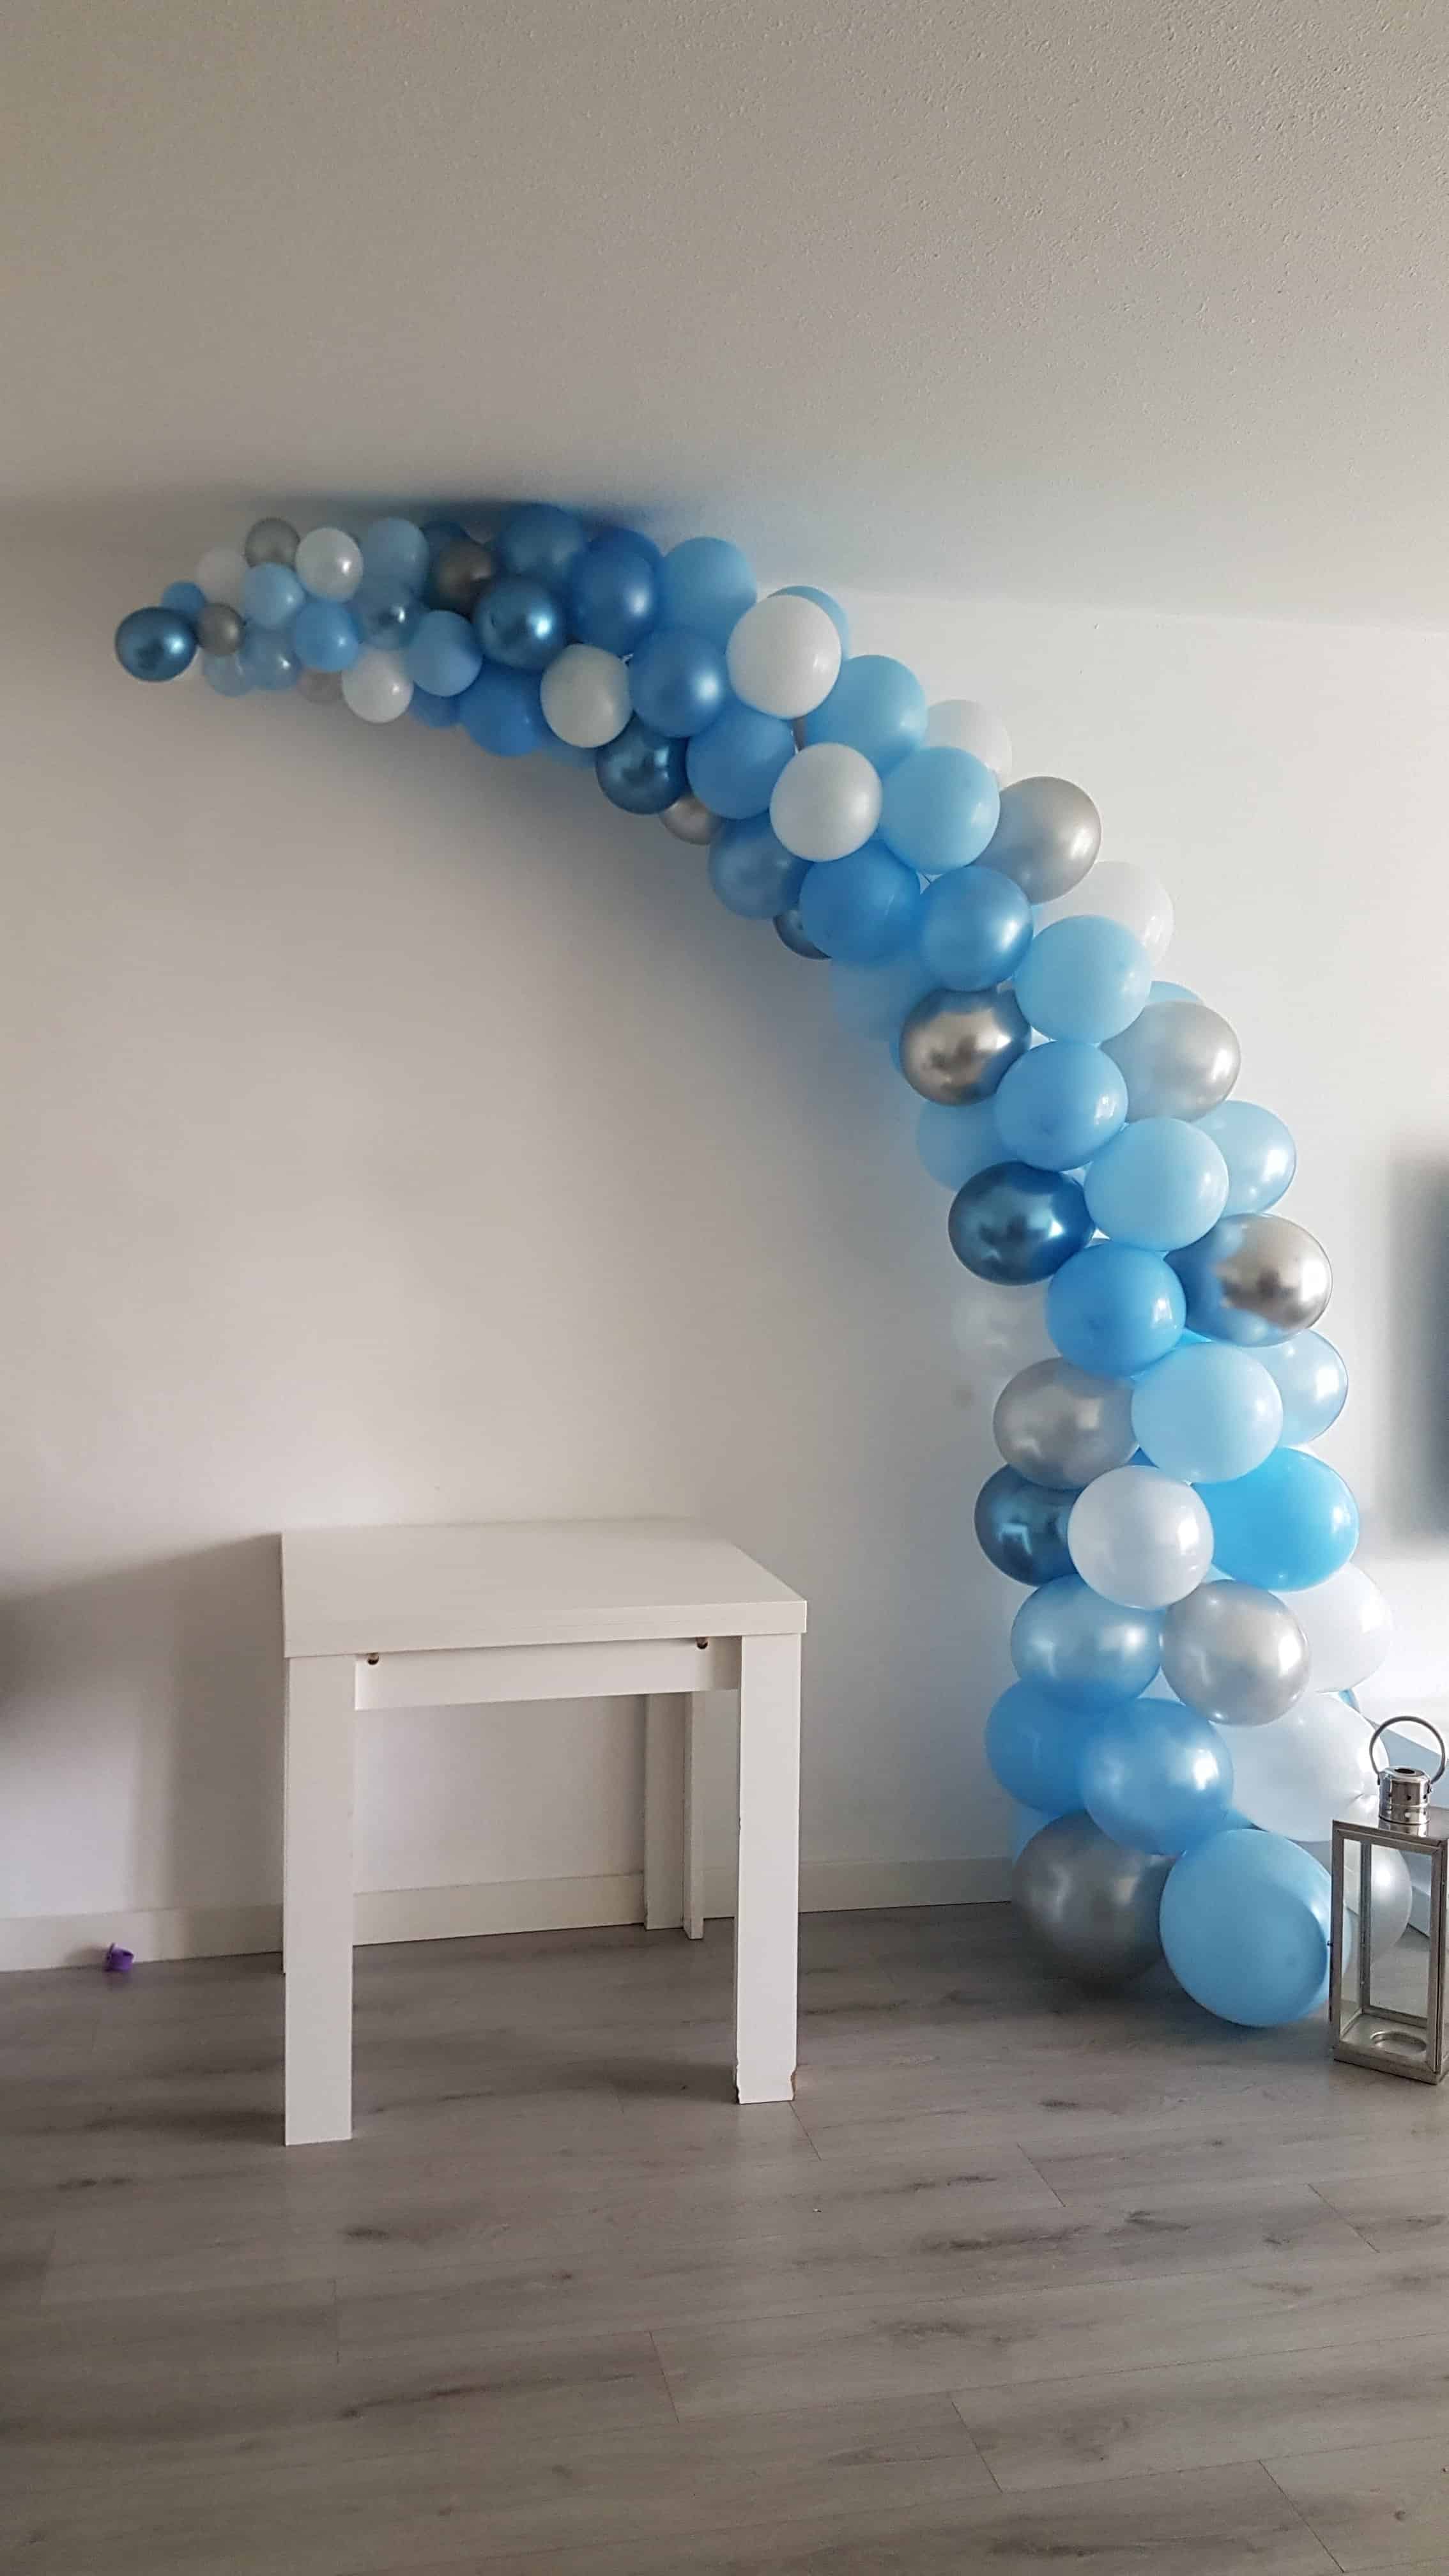 20190928 110845557121516723348940 - Verjaardag met versierde ballonwand